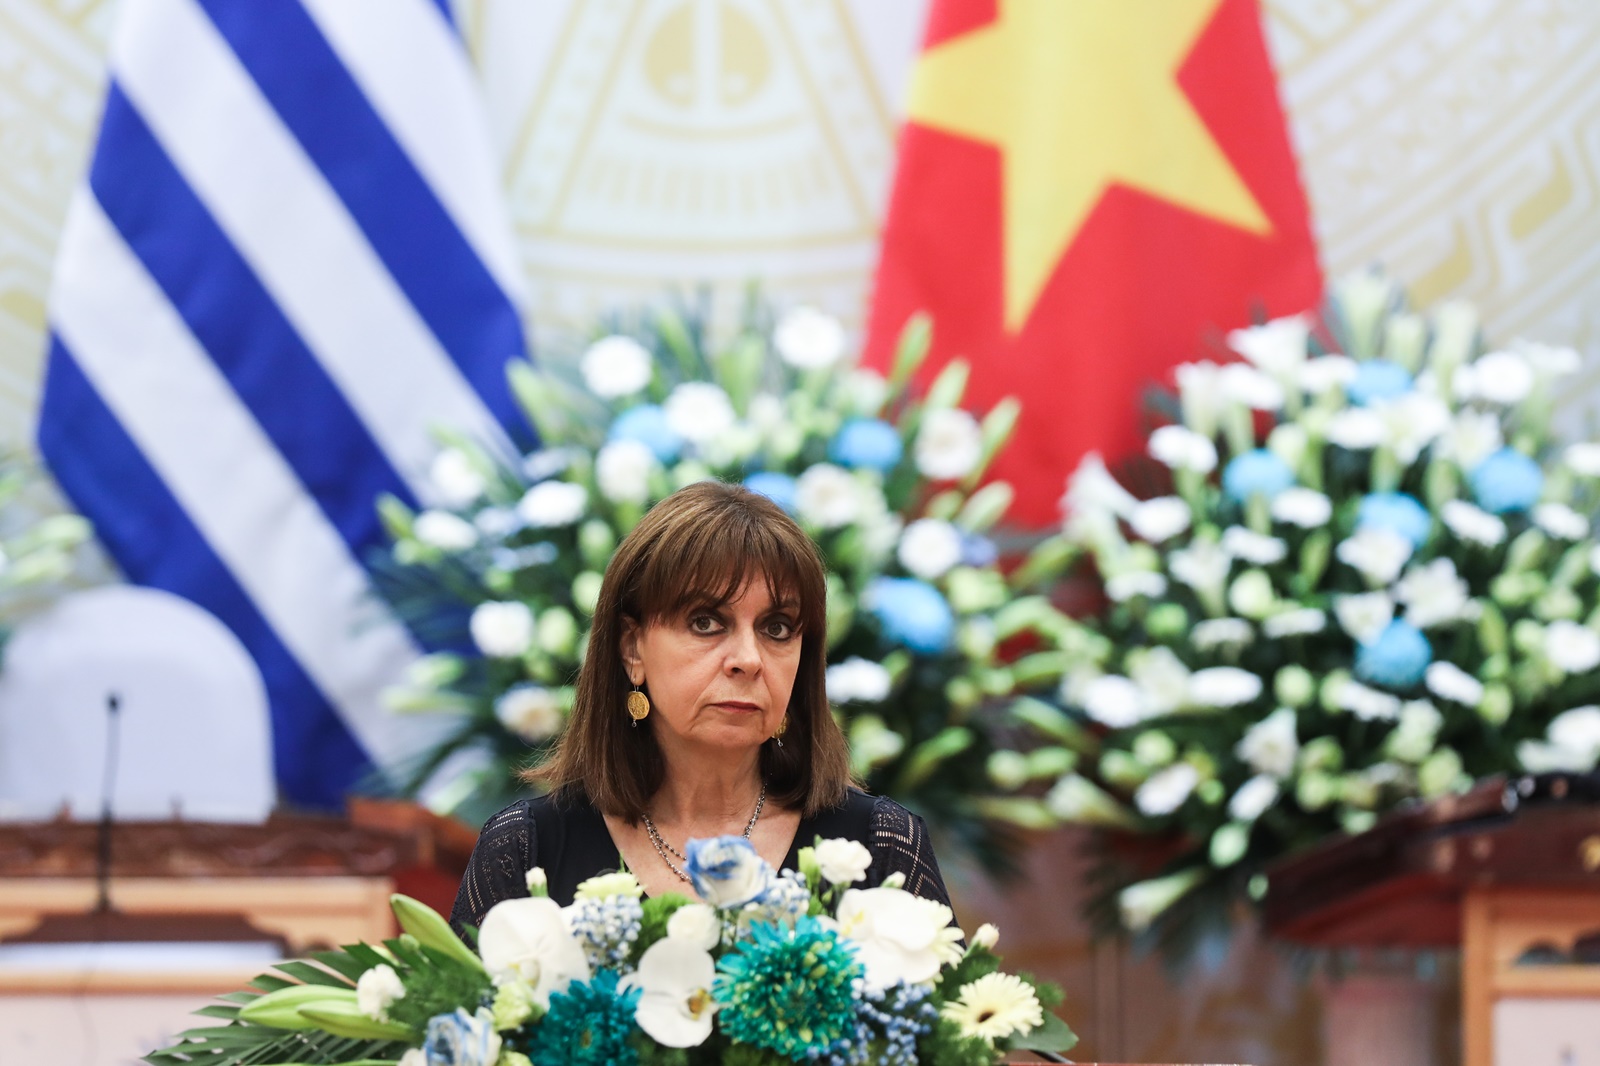 Σακελλαροπούλου Βιετνάμ: Οι χώρες μας συνδέονται με στενή φιλία, που εδράζεται σε σταθερές βάσεις